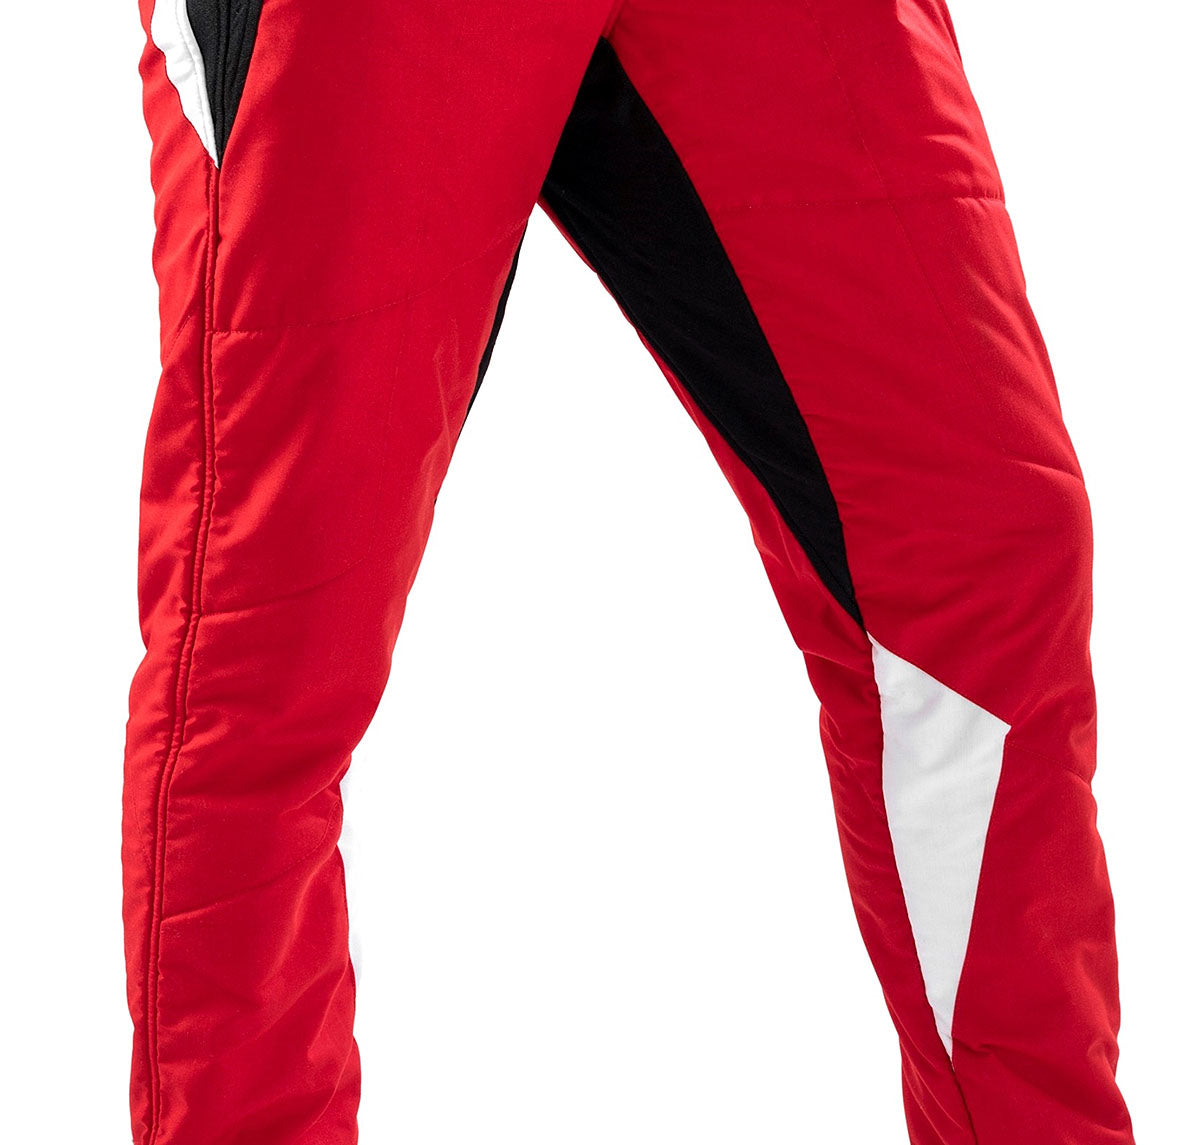 Sparco Superleggera Race Suit Knee Closeup Image